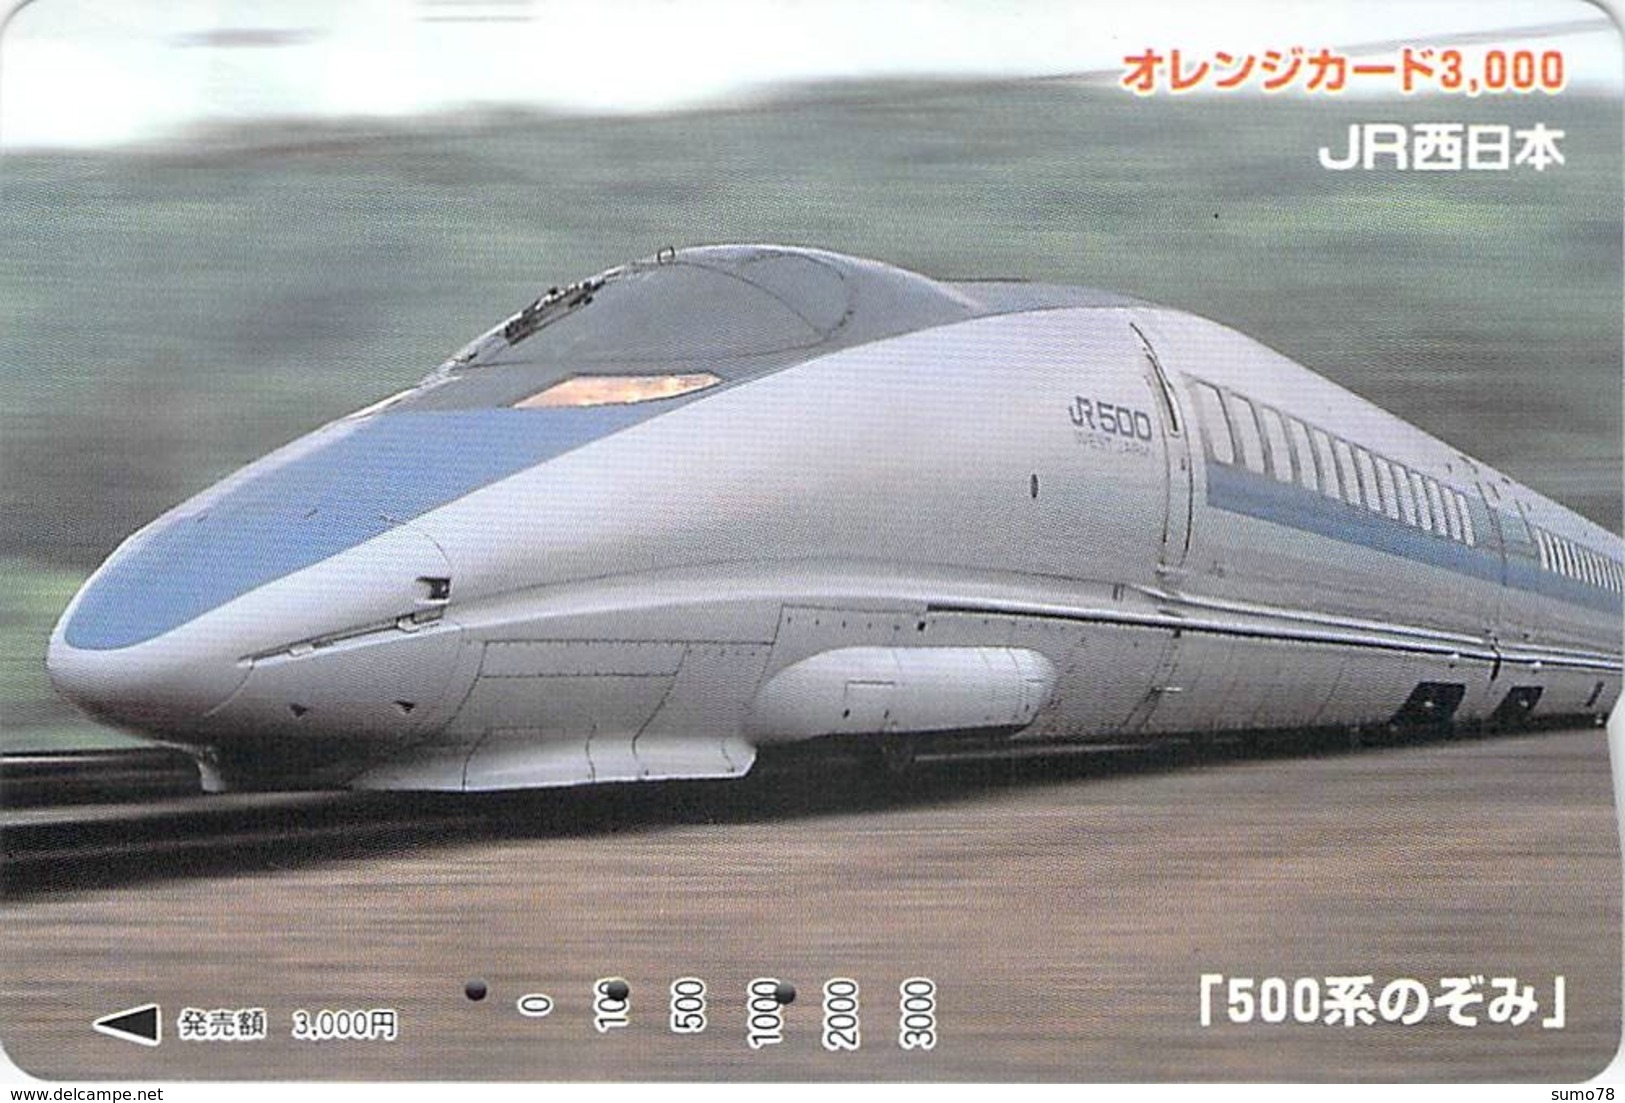 TRAIN - LOCOMOTIVE - METRO - TRAMWAY - CHEMIN De FER - Carte Prépayée Japon - Prépaid Card - Trains